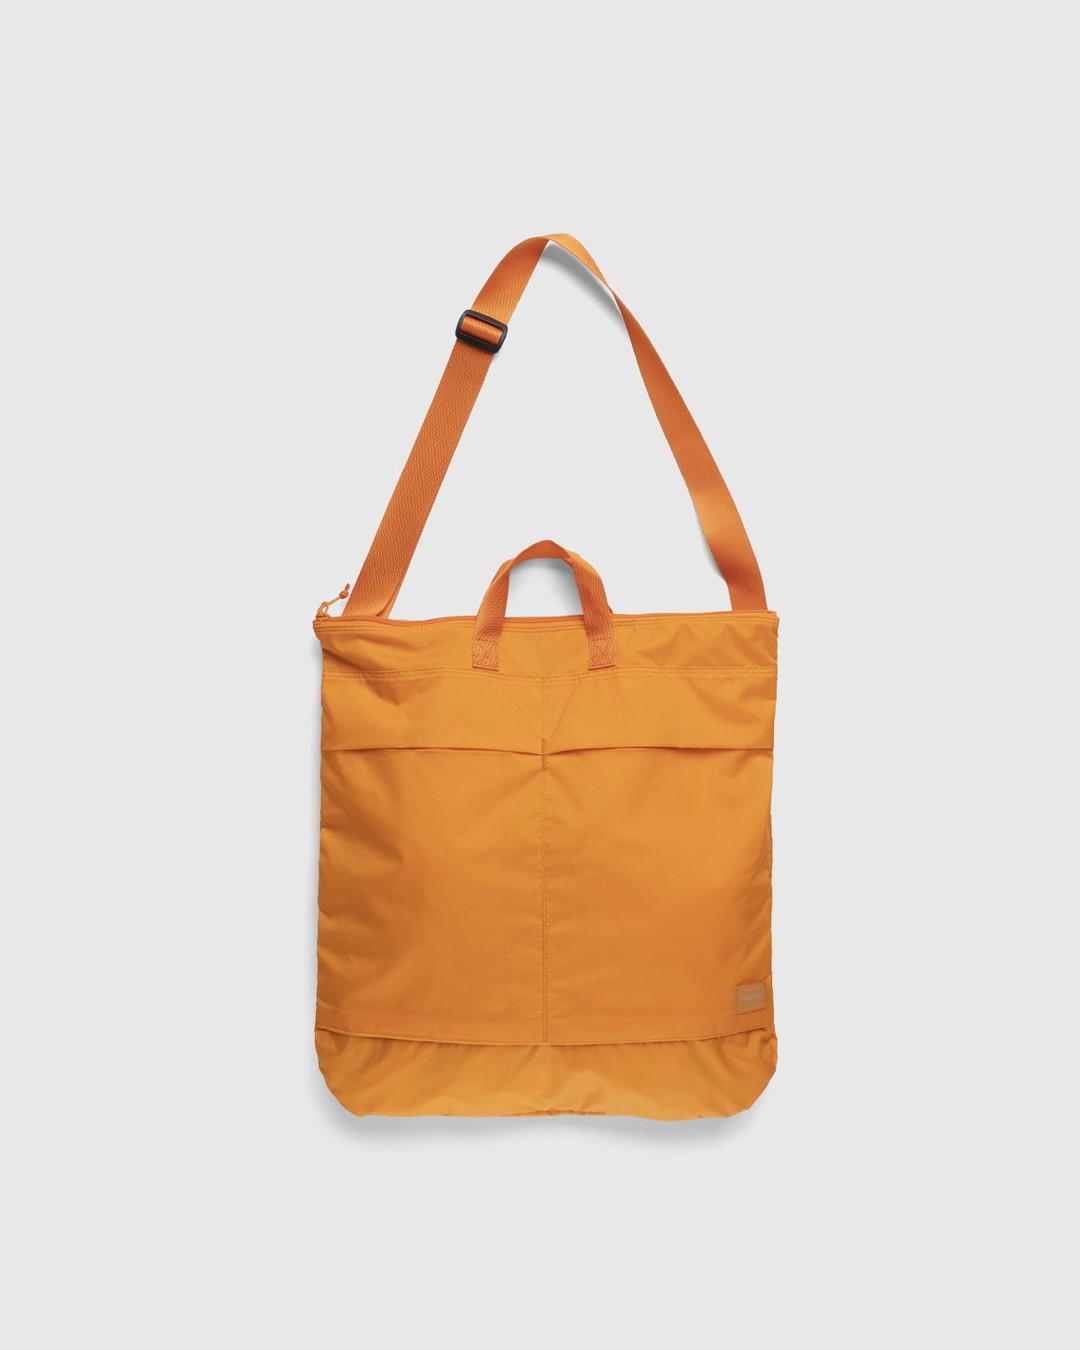 Porter-Yoshida & Co. – Flex 2-Way Helmet Bag Orange | Highsnobiety